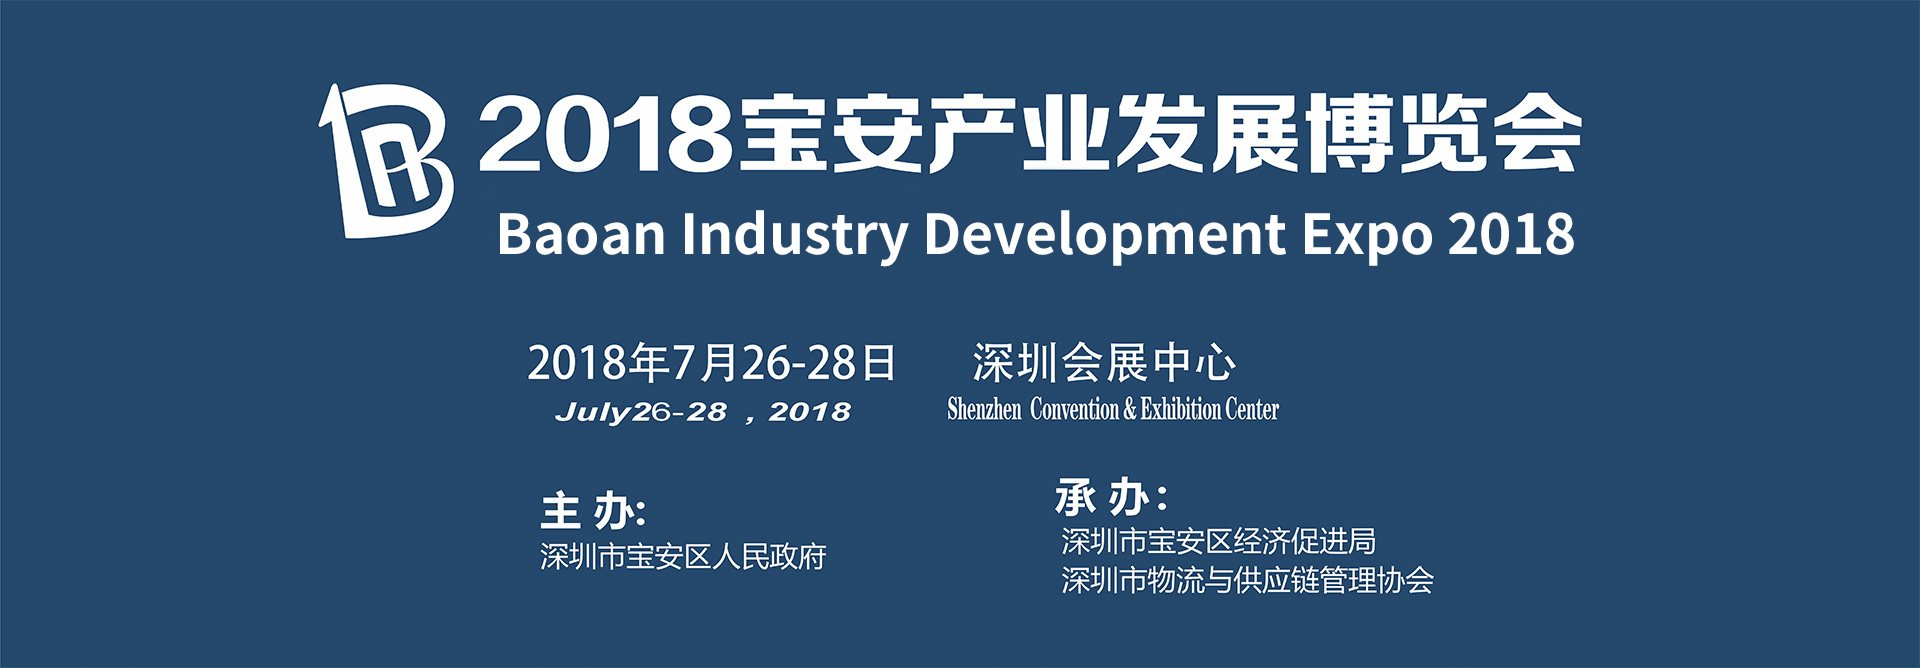 2018宝安产业发展博览会